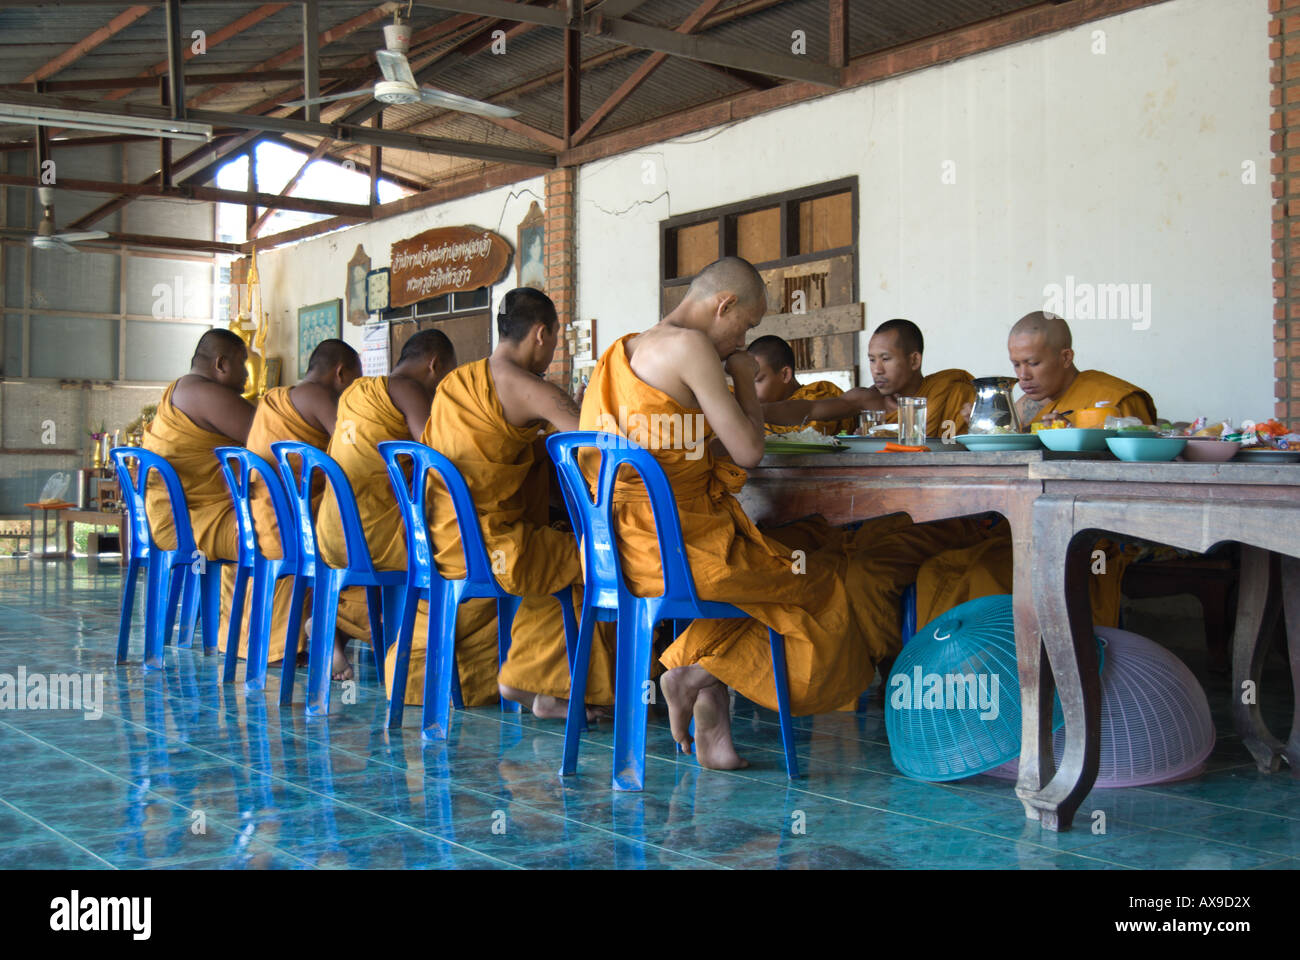 Assis sur des chaises en plastique bleu à une table, thai moines bouddhistes en robe jaune manger un délicieux repas dans un temple près de Phetchabun, Thaïlande Banque D'Images